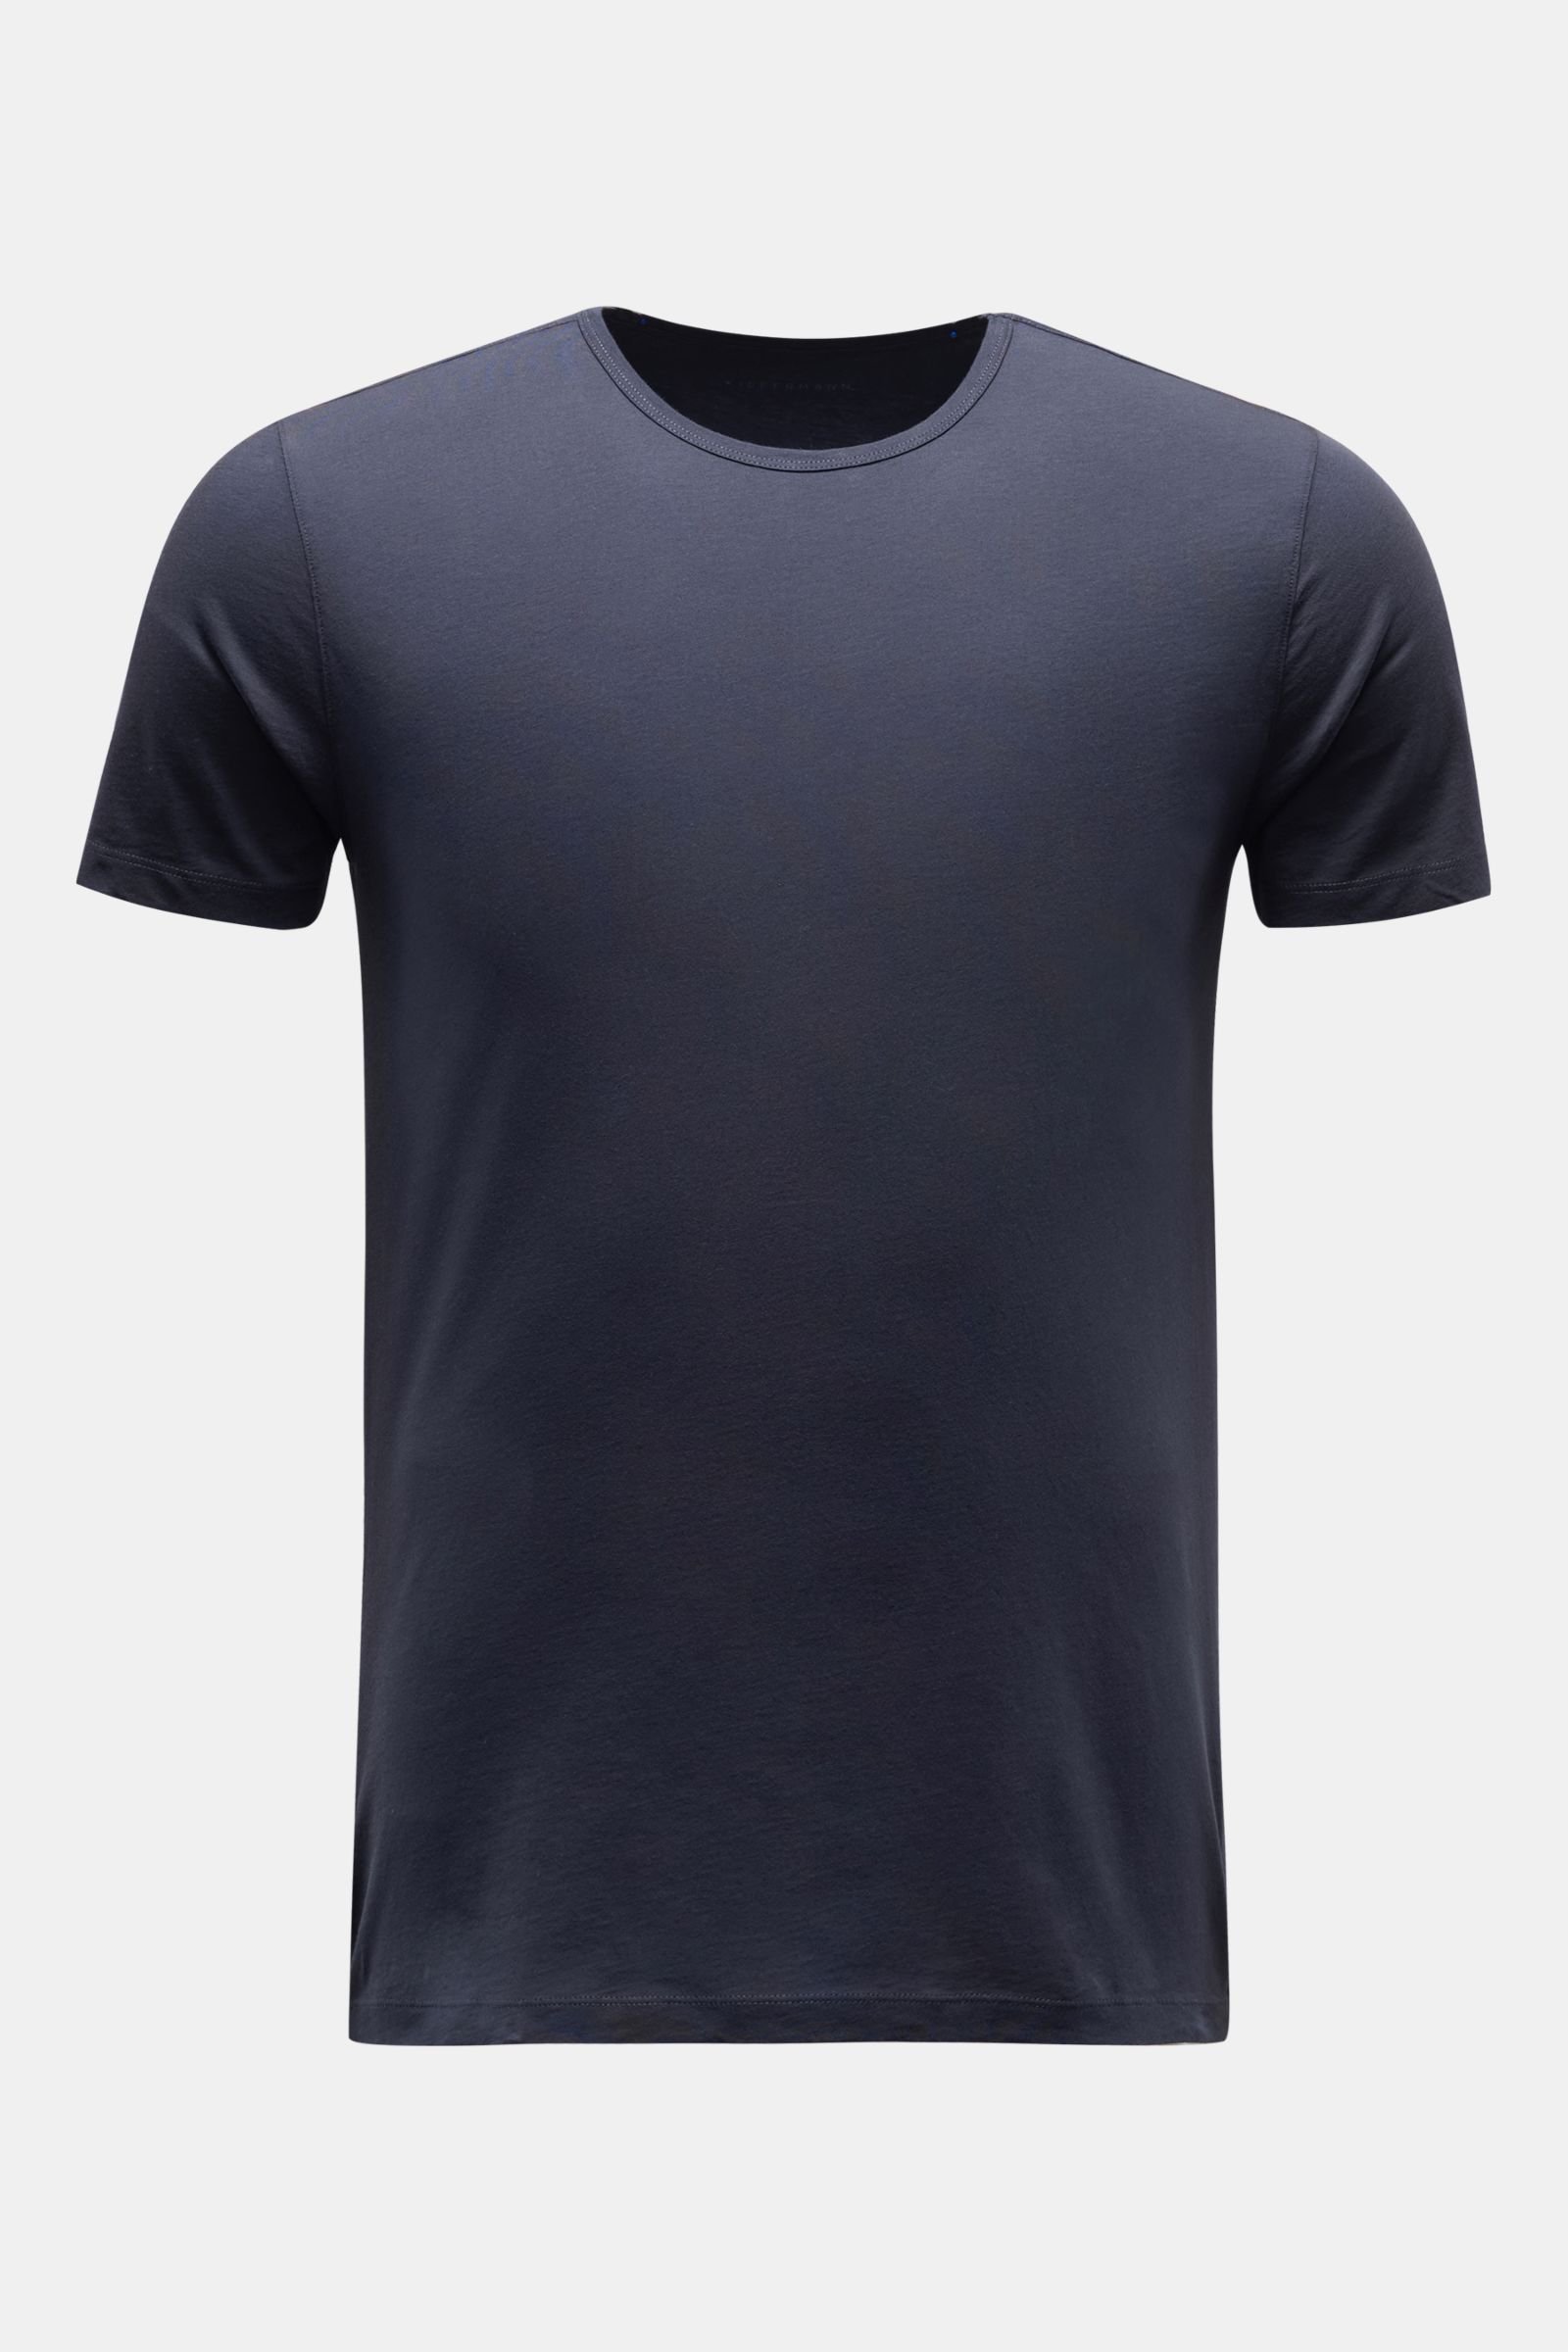 Crew neck T-shirt 'Lio' dark navy